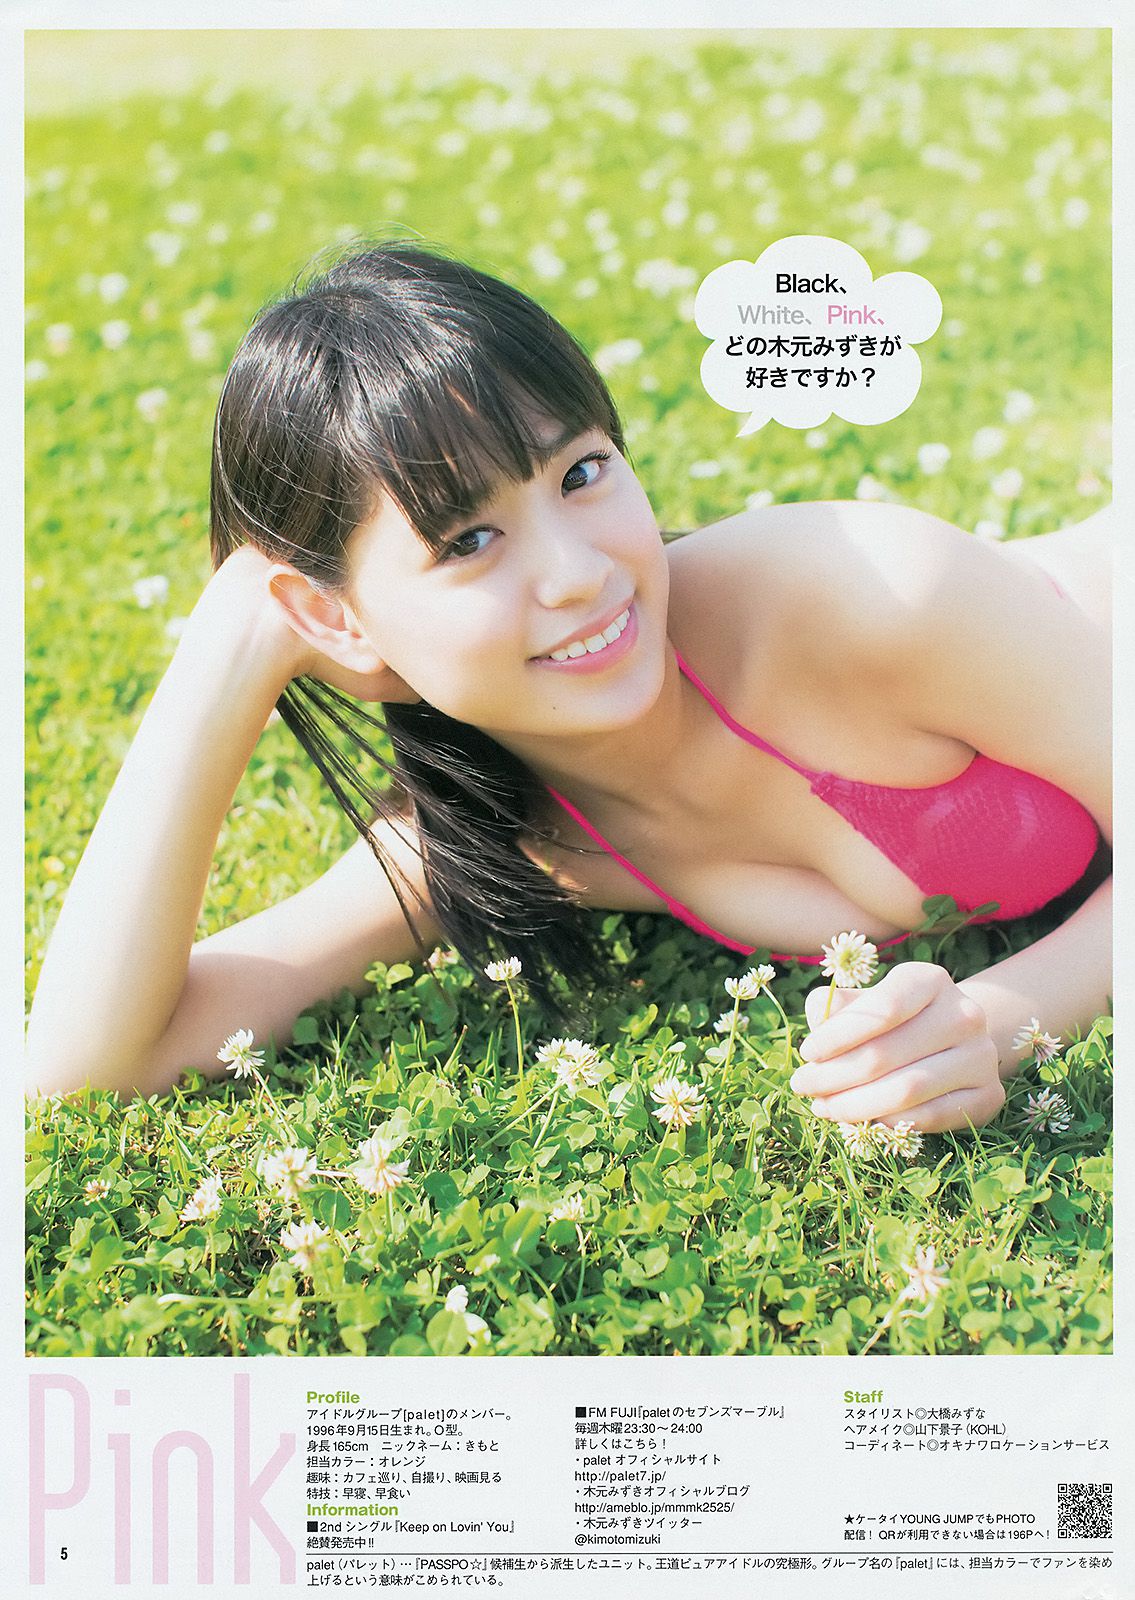 Yua Shinkawa Mizuki Kimoto Collection Ultimate 2014 [Weekly Young Jump] 2014 No.21-22 Photo Magazine หน้า 6 No.6651e3